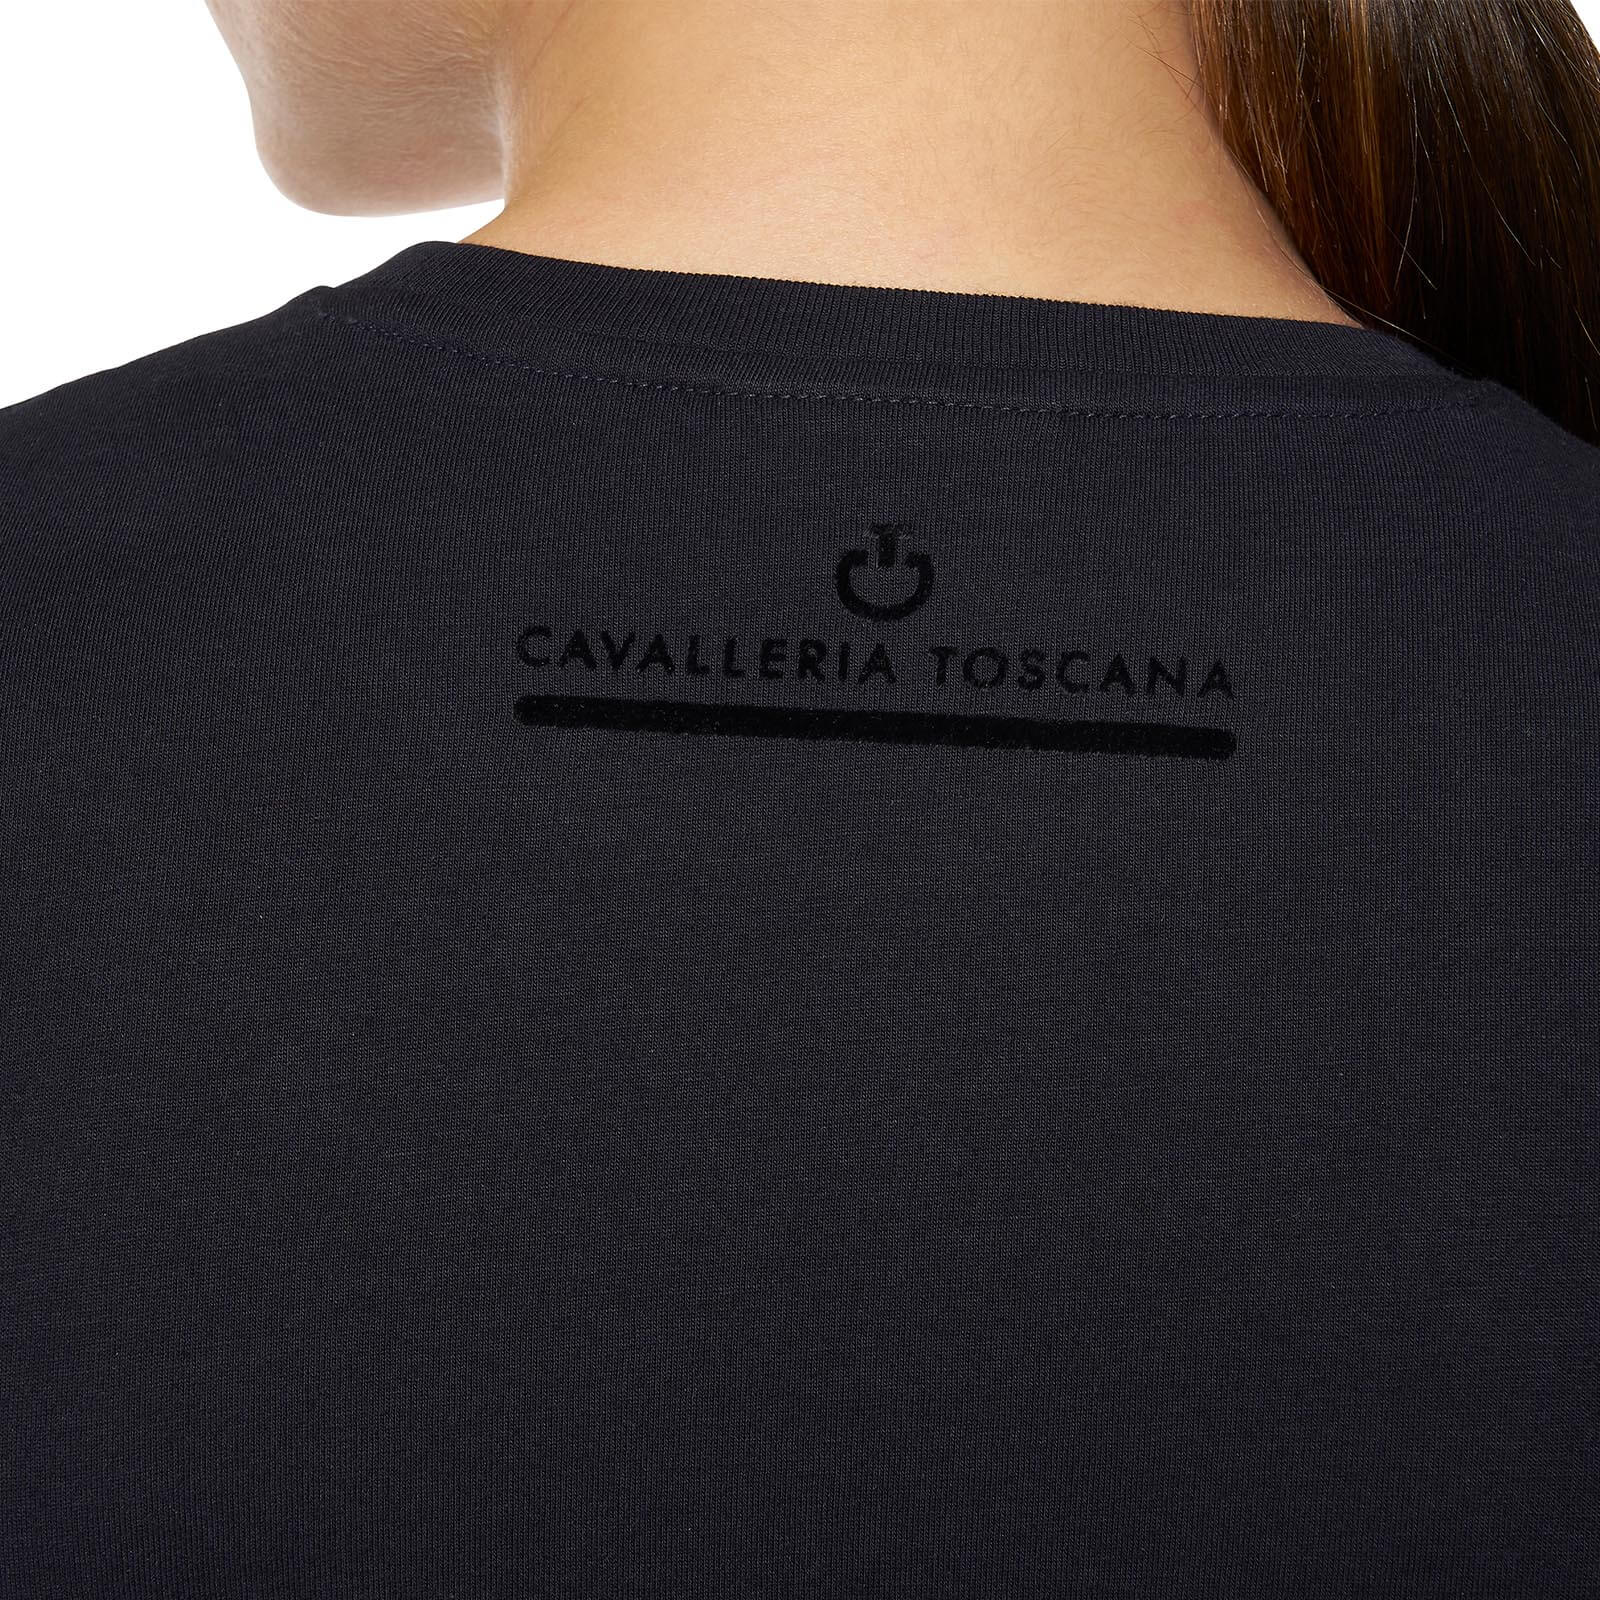 CAVALLERIA TOSCANA bequemes Damen T-Shirt mit Mini CT Flock - navy - XL - 4